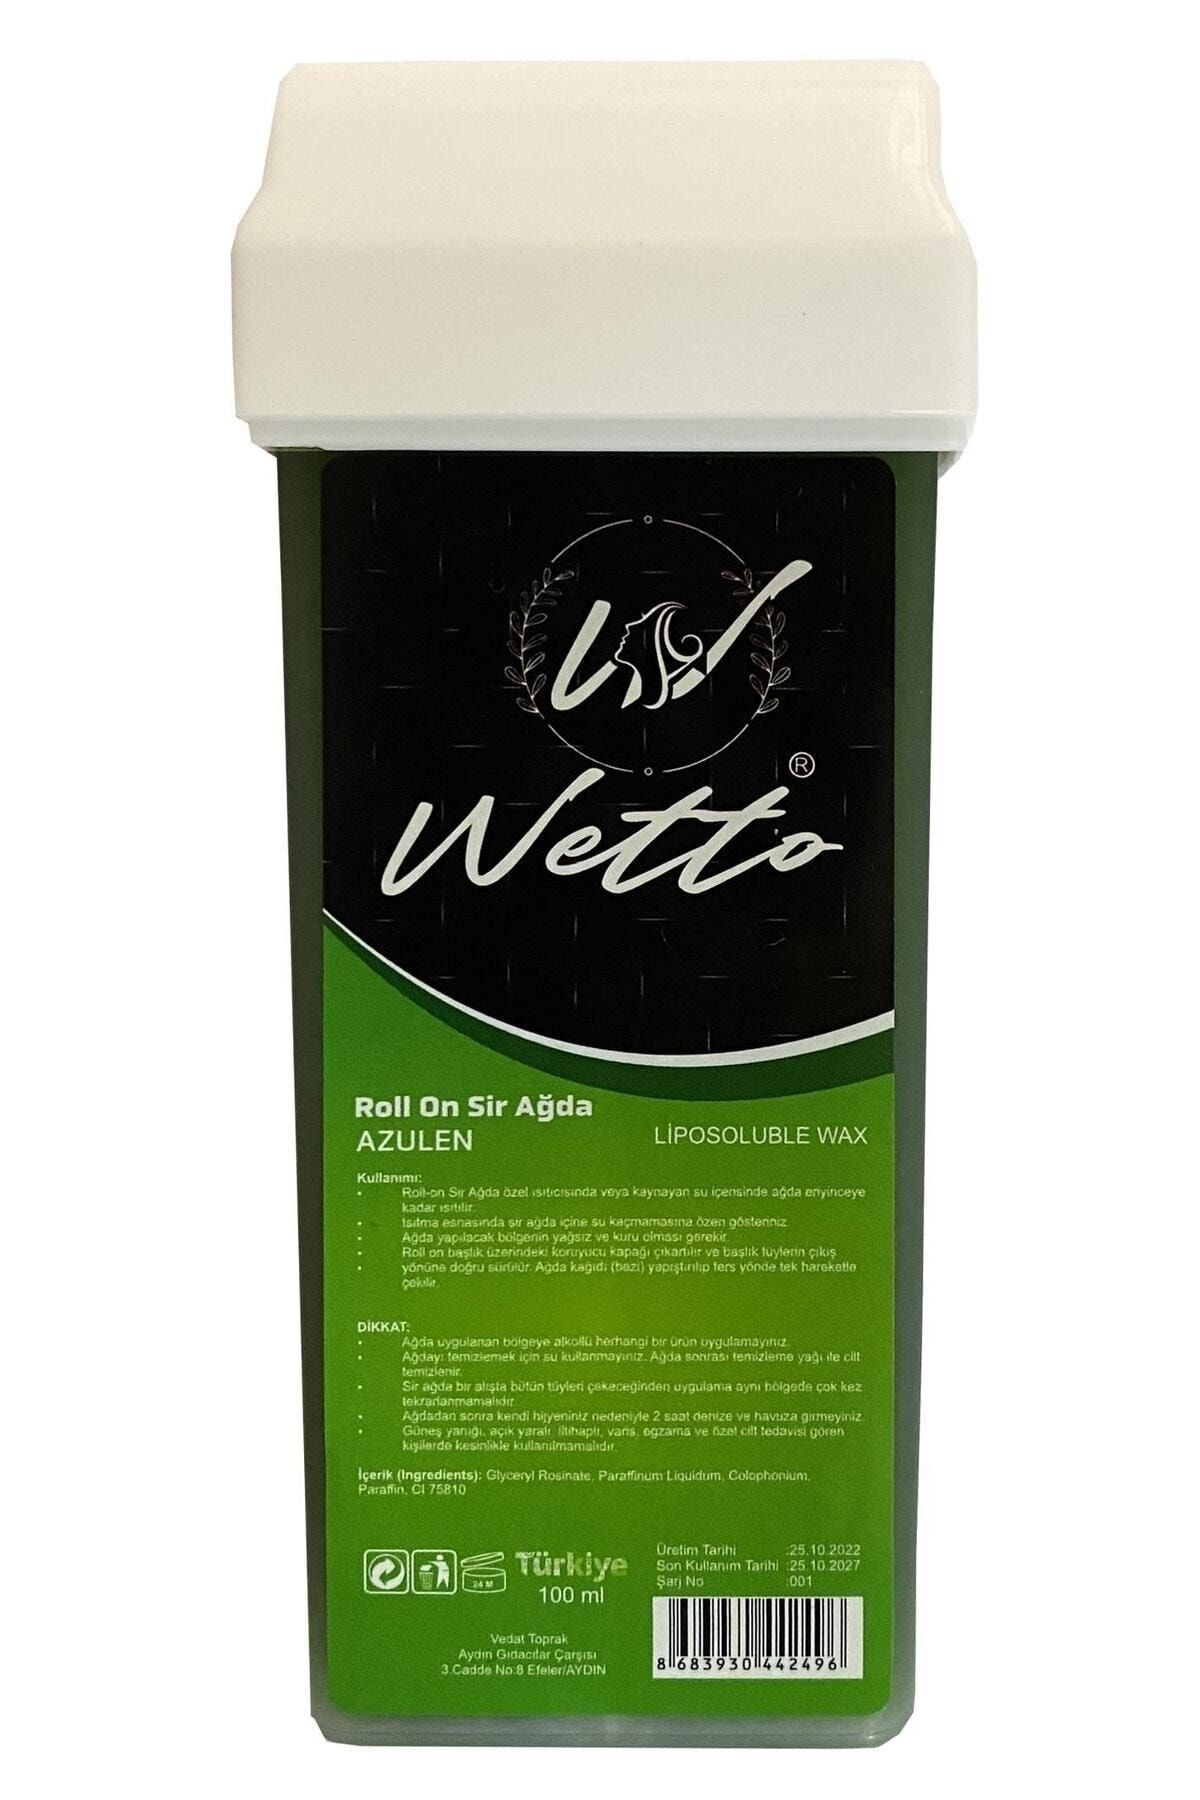 Wetto Professional Kartuş Ağda Azulen(YEŞİL) 100 ml